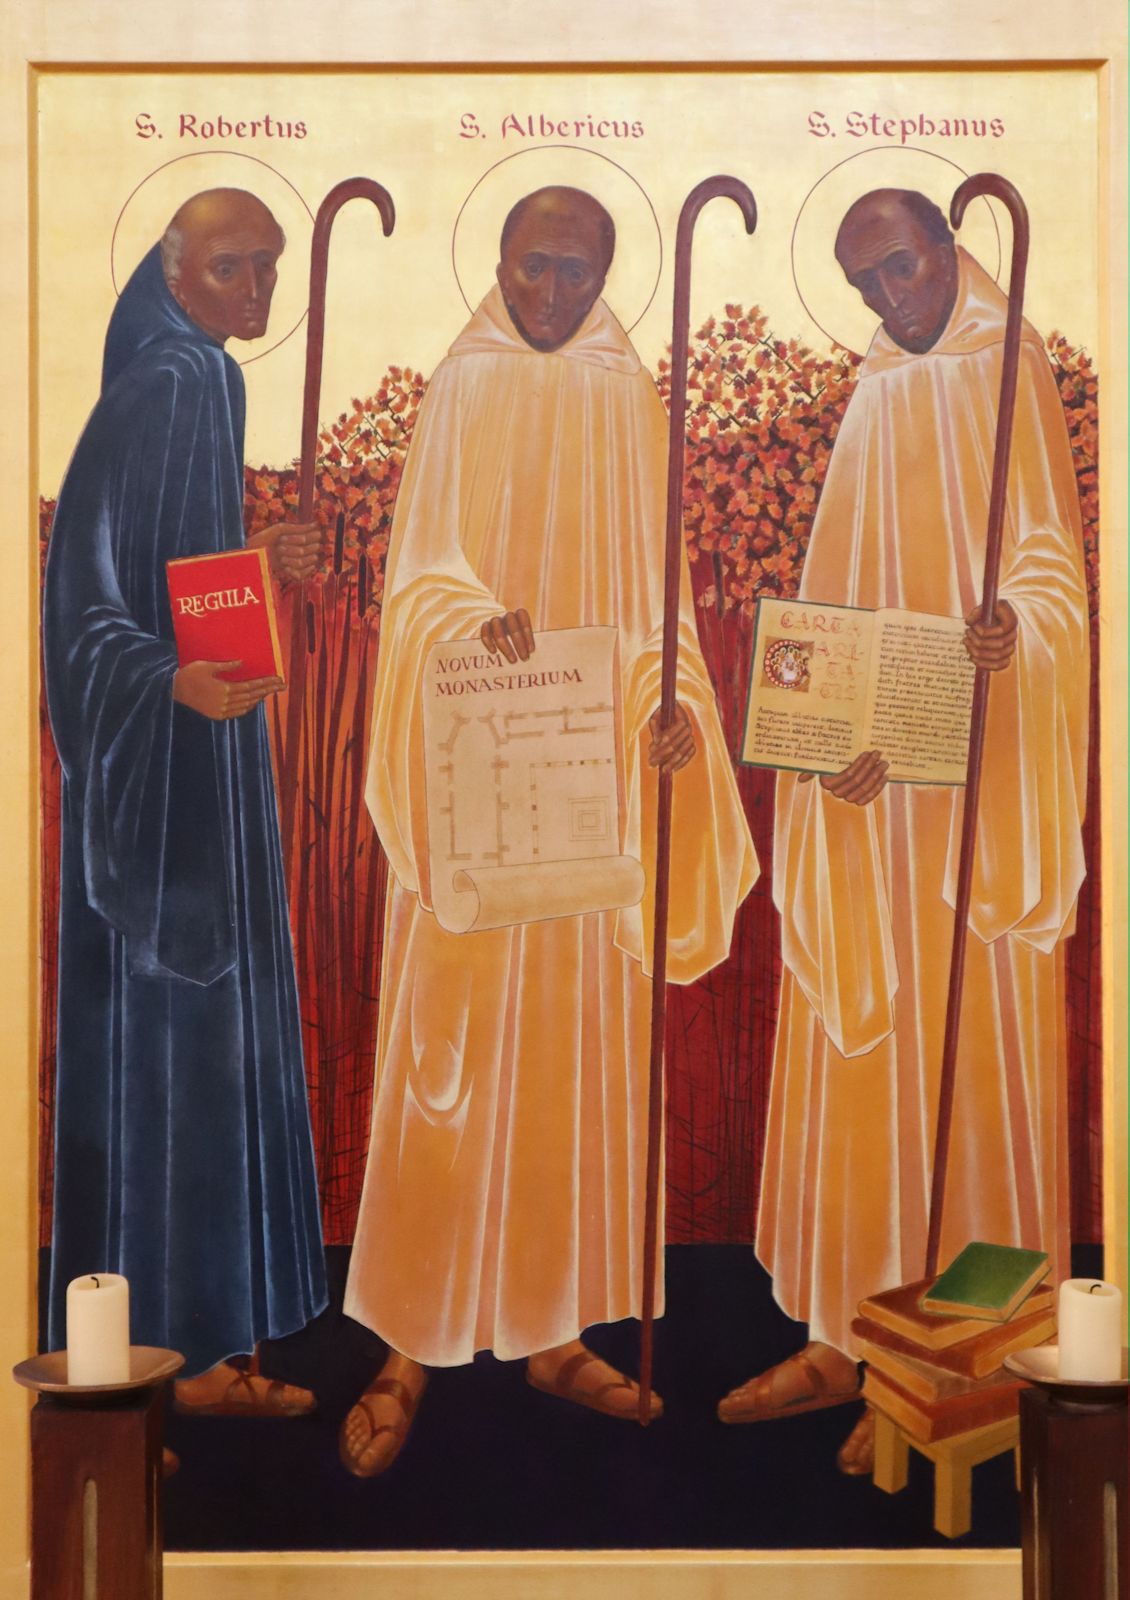 Ikone: Stephan (rechts) mit Robert von Molesme und Alberich von Cîteaux, in der Kirche des Klosters Cîteaux